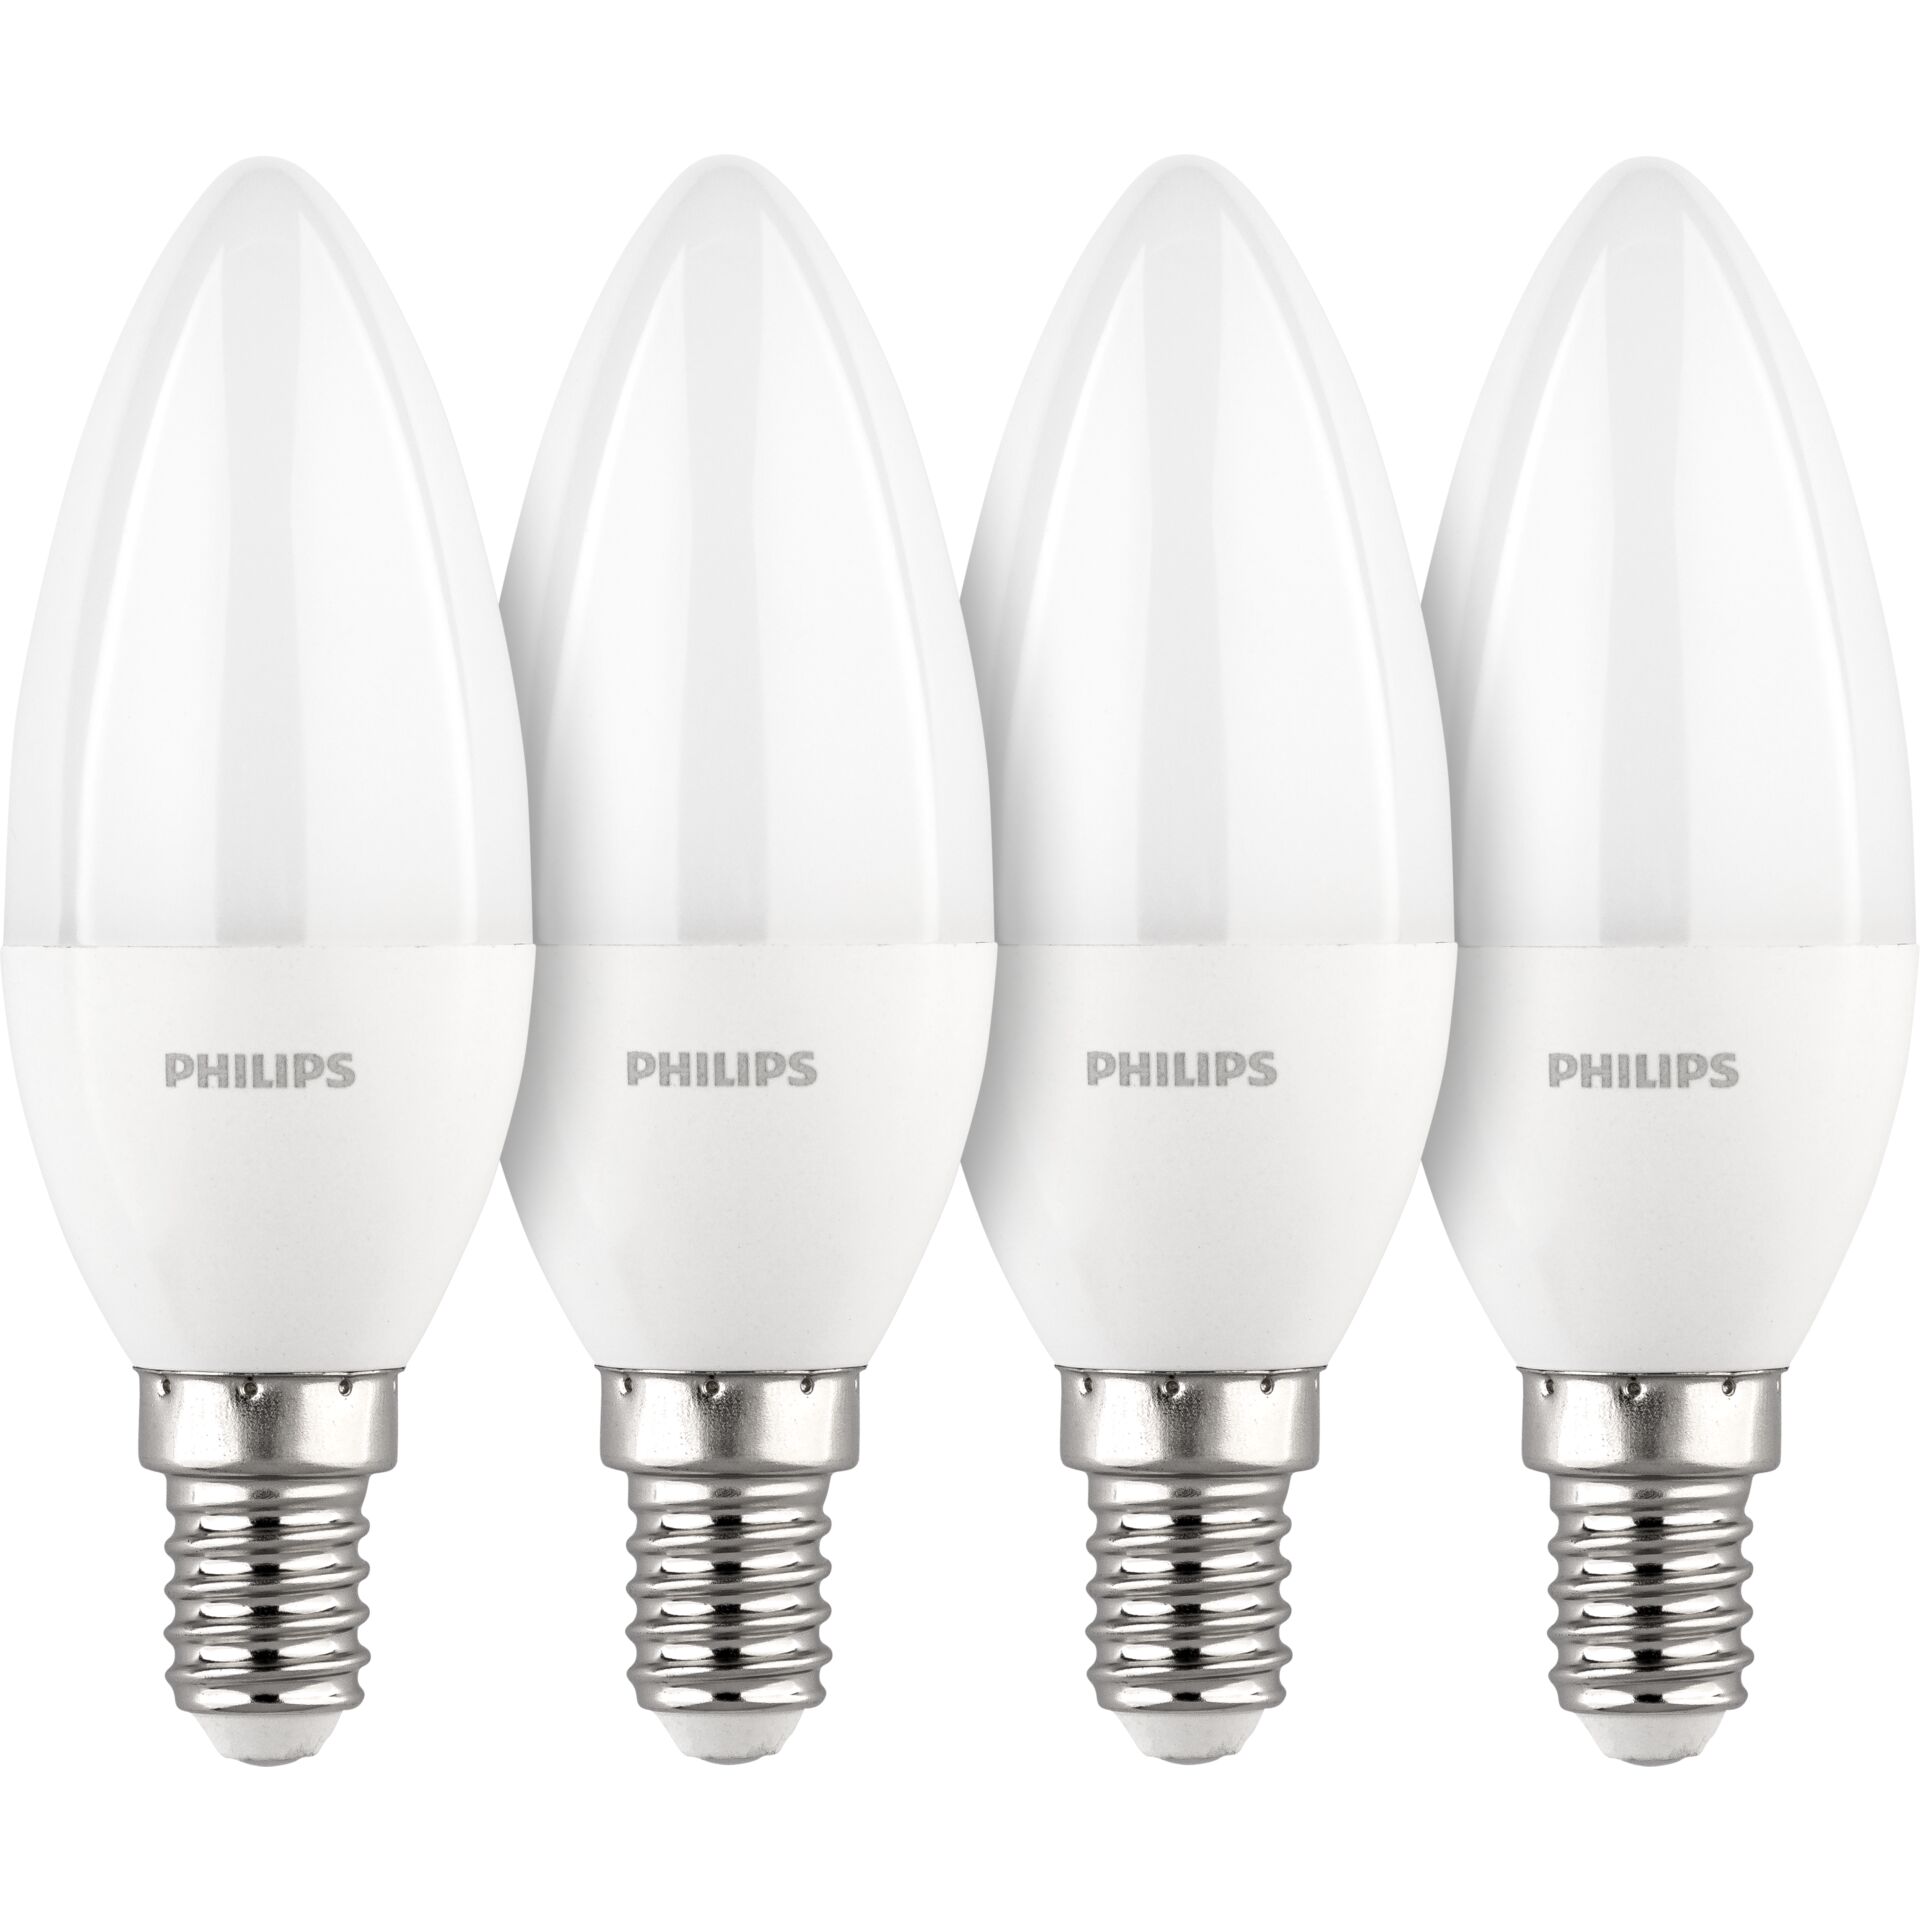 Philips LED lampadina E14 kit 4pz candela 40W 2700K